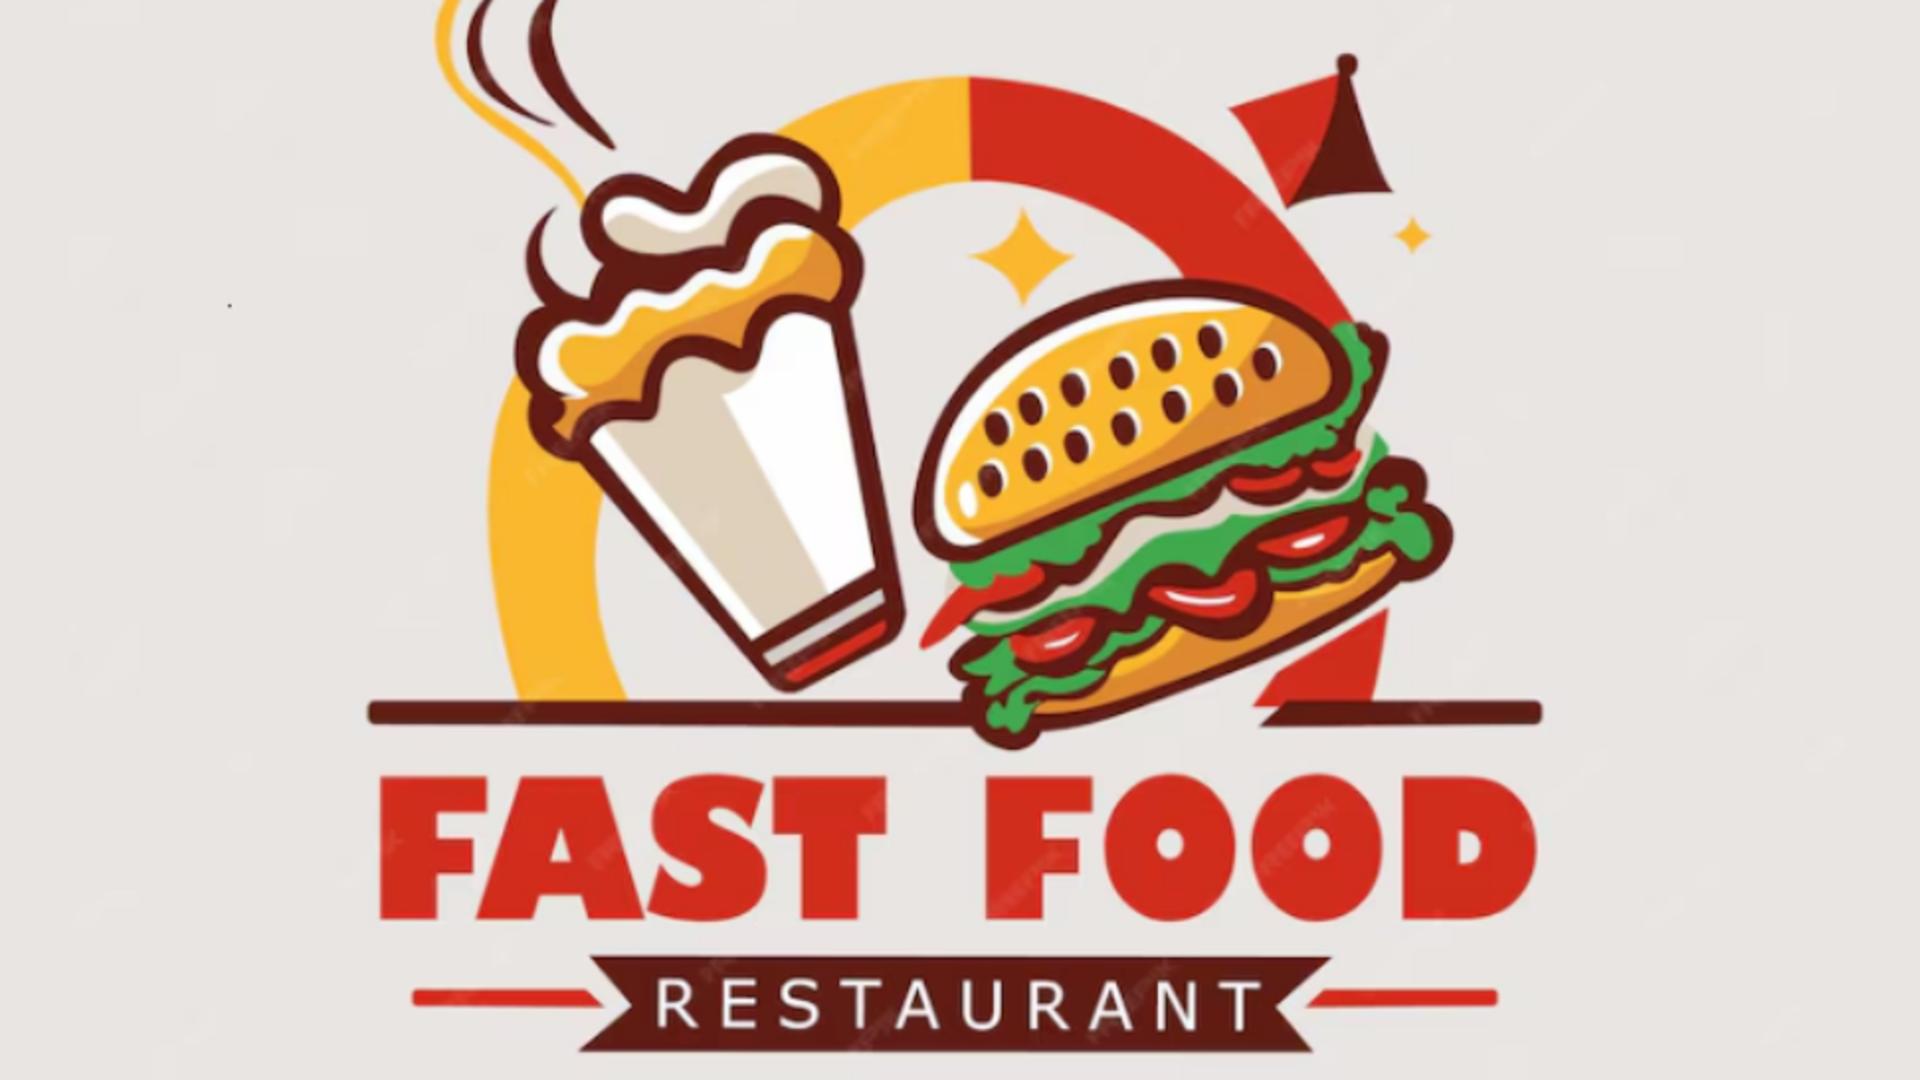 De ce numele marilor restaurante fast food sunt scrise cu roșu. Trucurile prin care ne ademenesc să intrăm și să consumăm, chiar dacă nu ne este foame